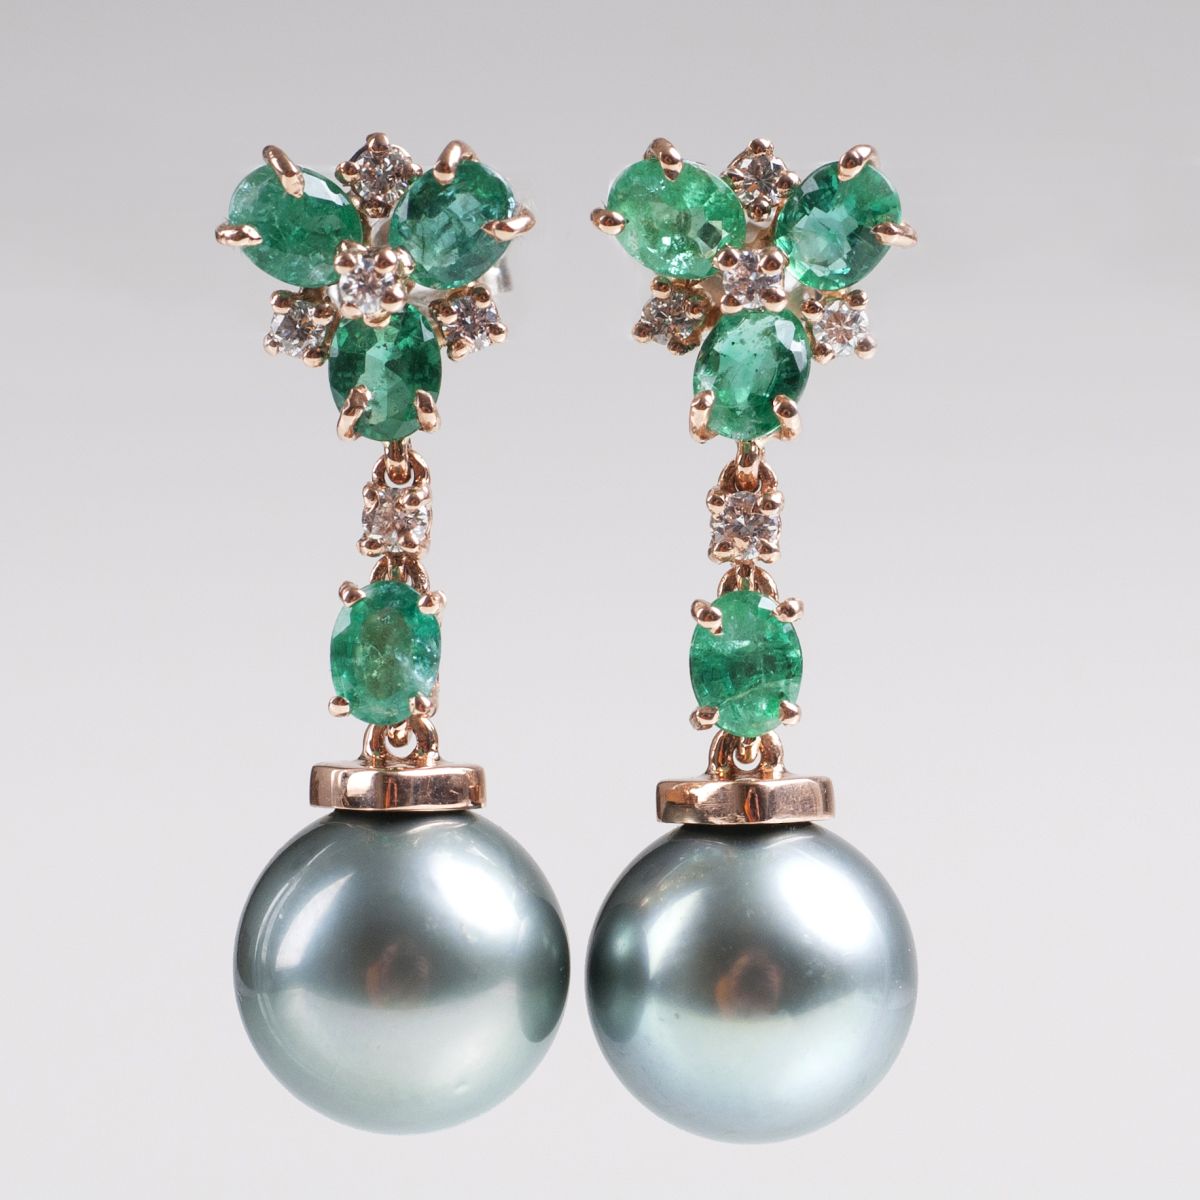 A pair of Tahiti pearl emerald earpendants